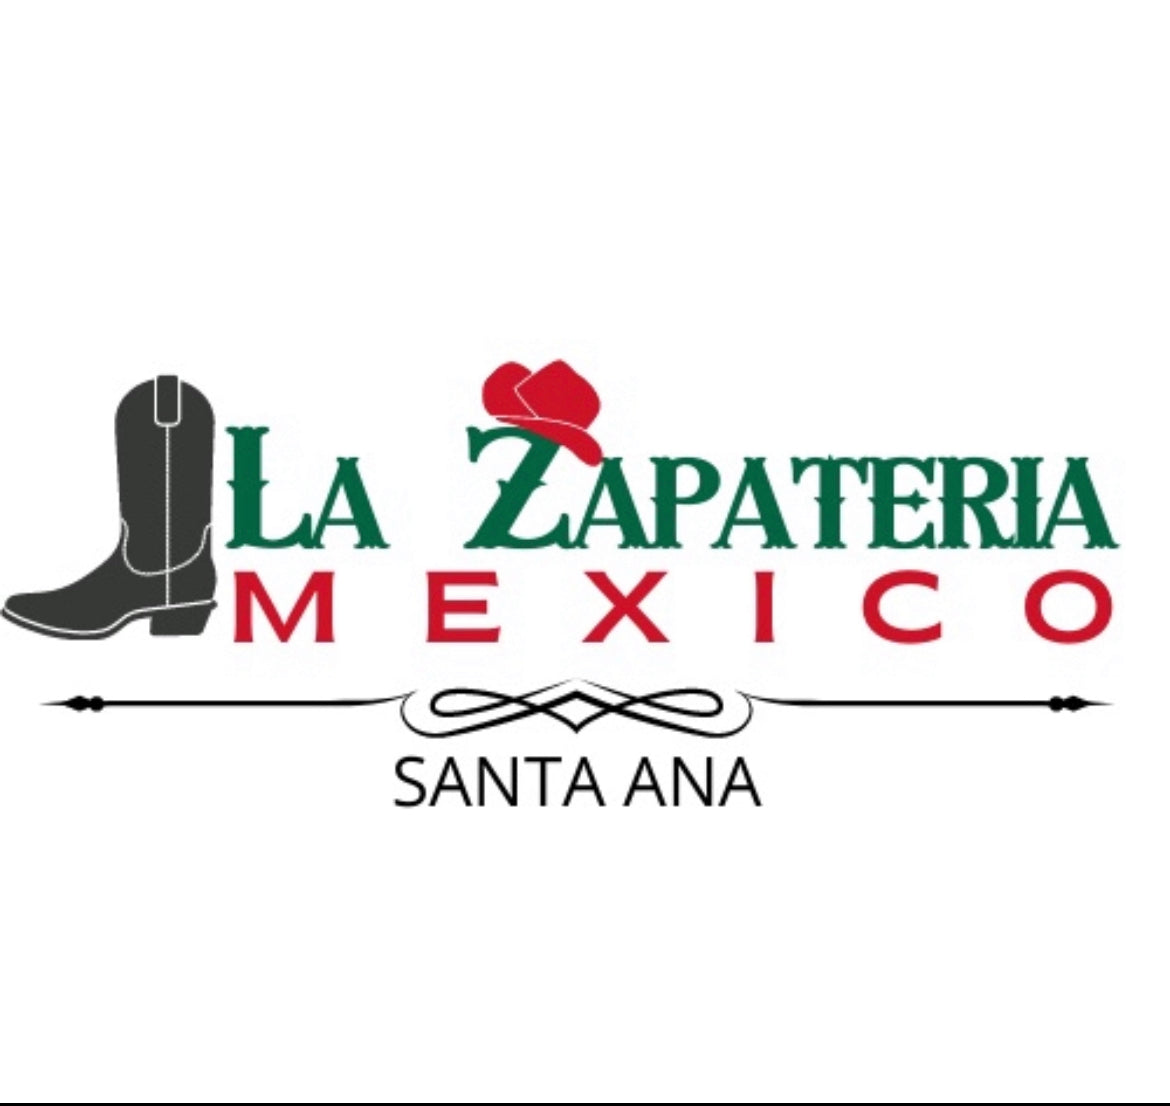 La Zapateria Mexico